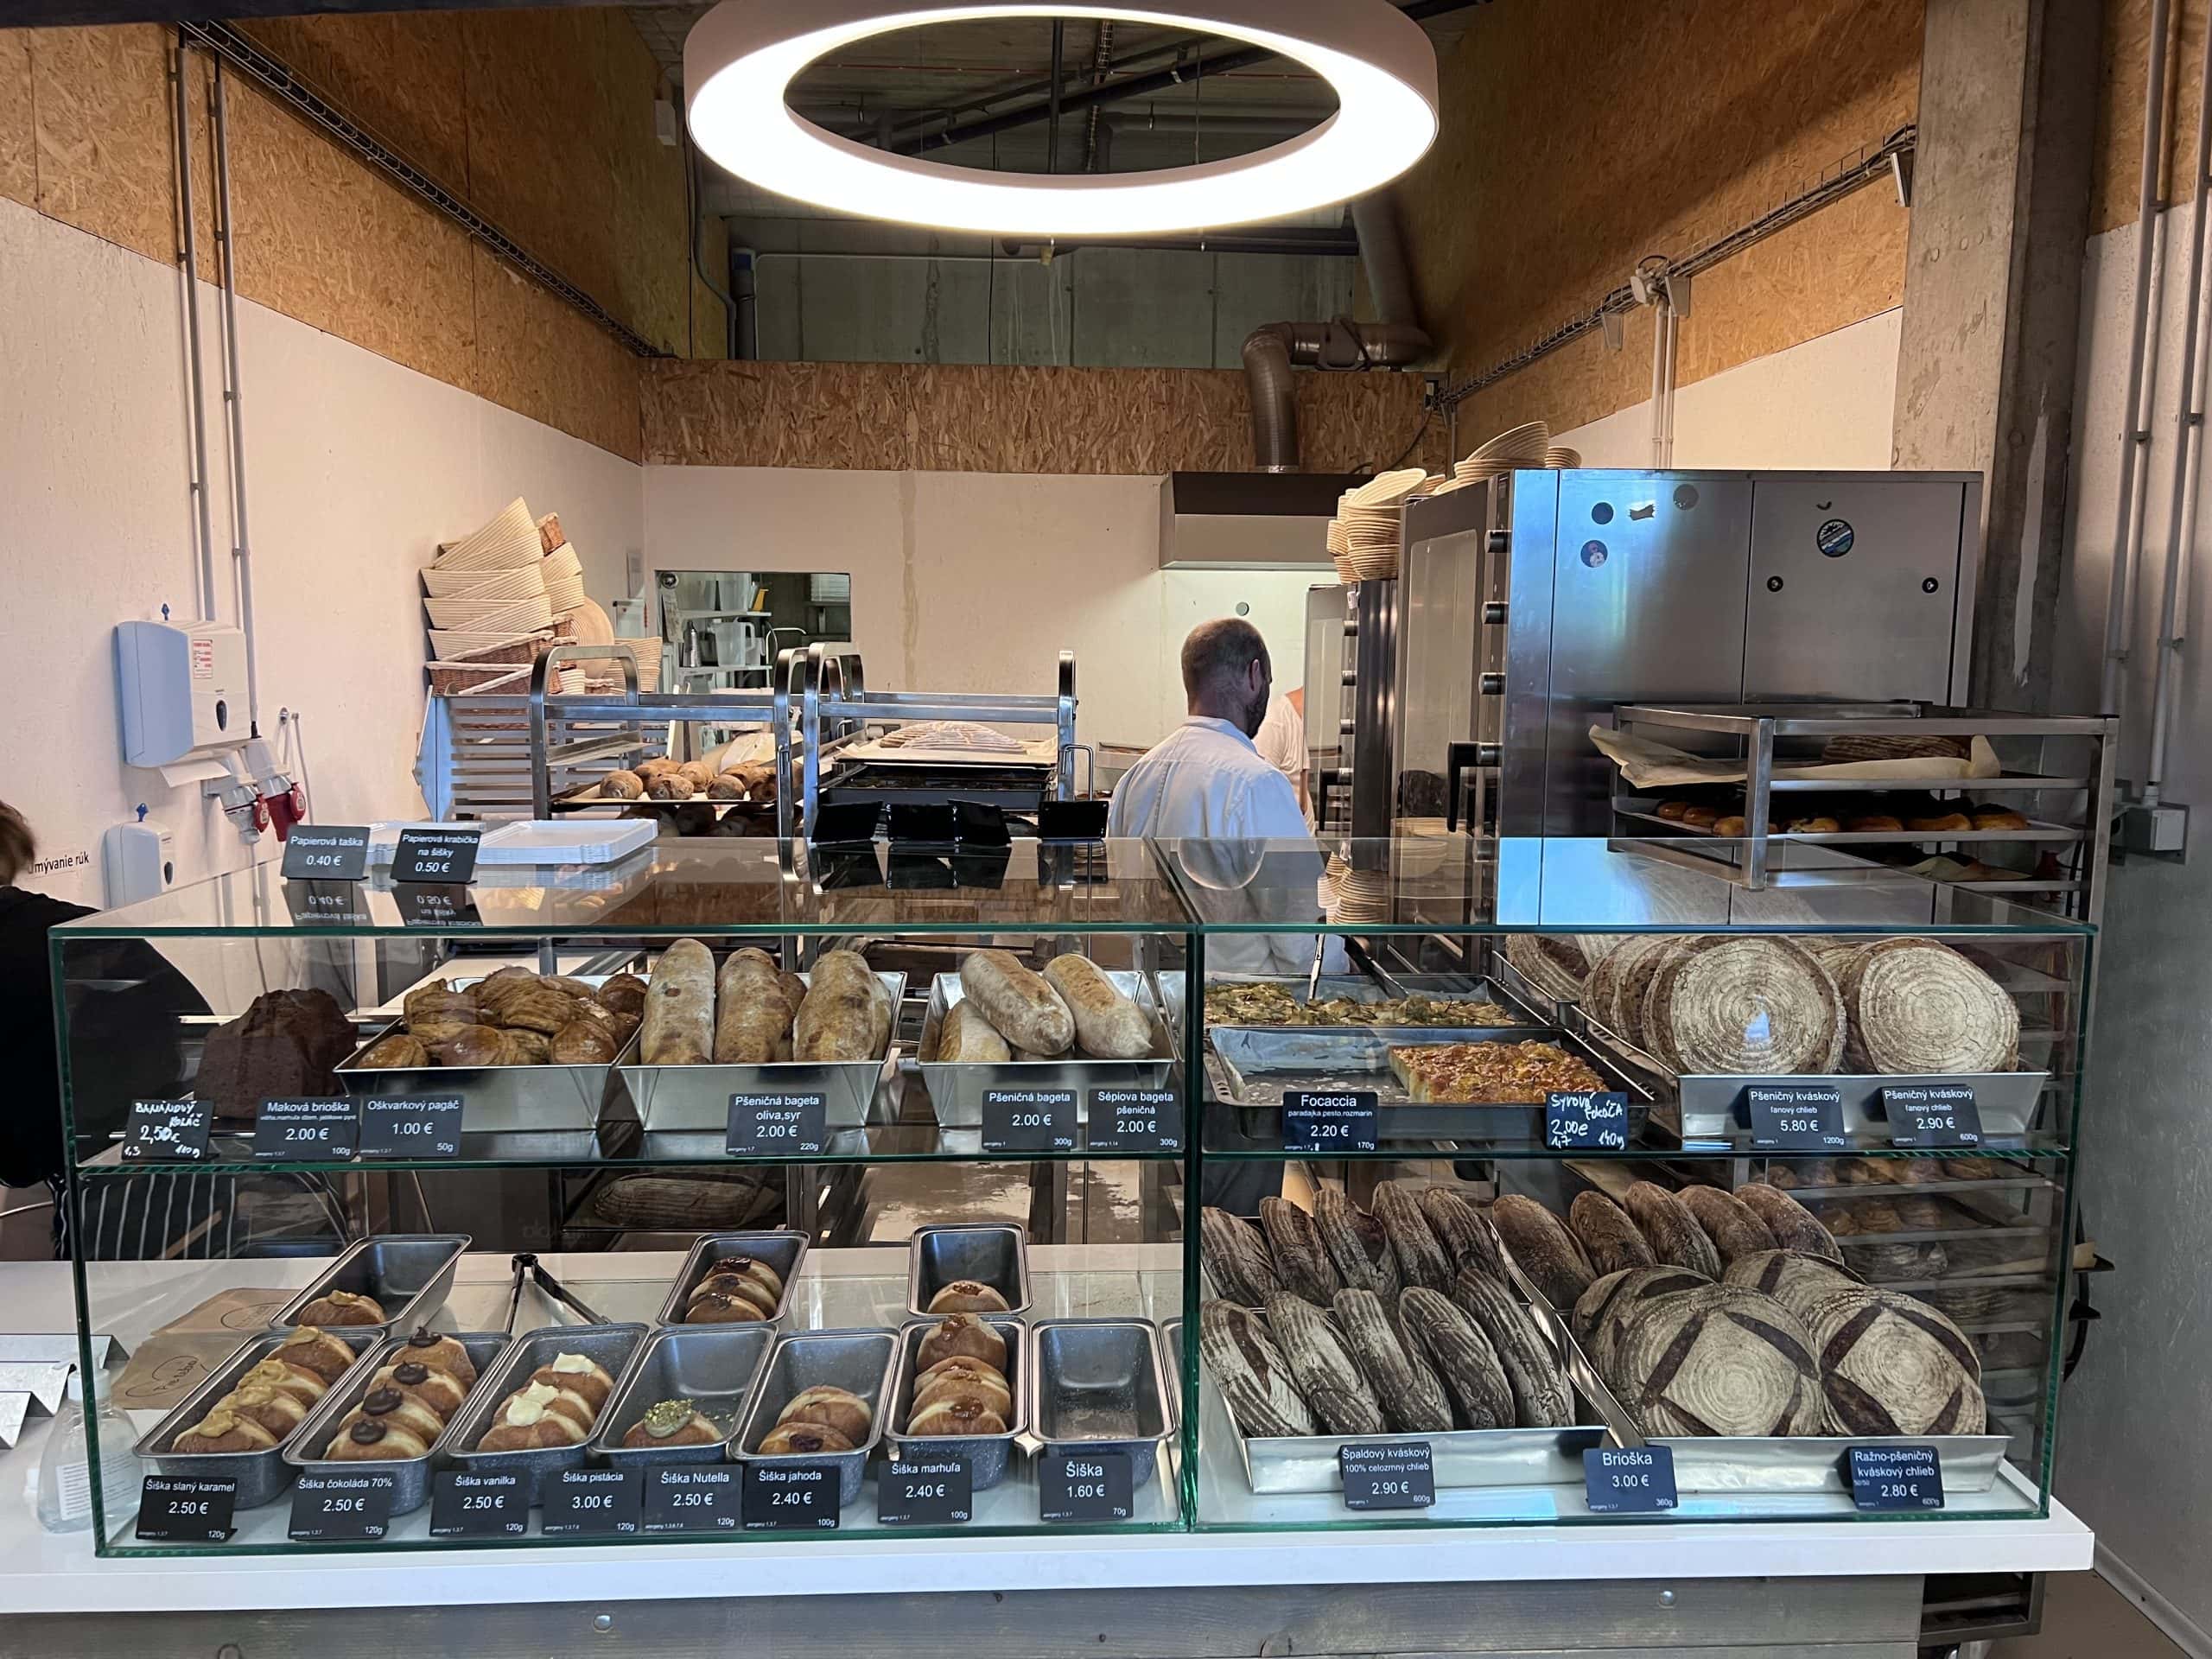 Šiškáreň pekáreň v Bratislave